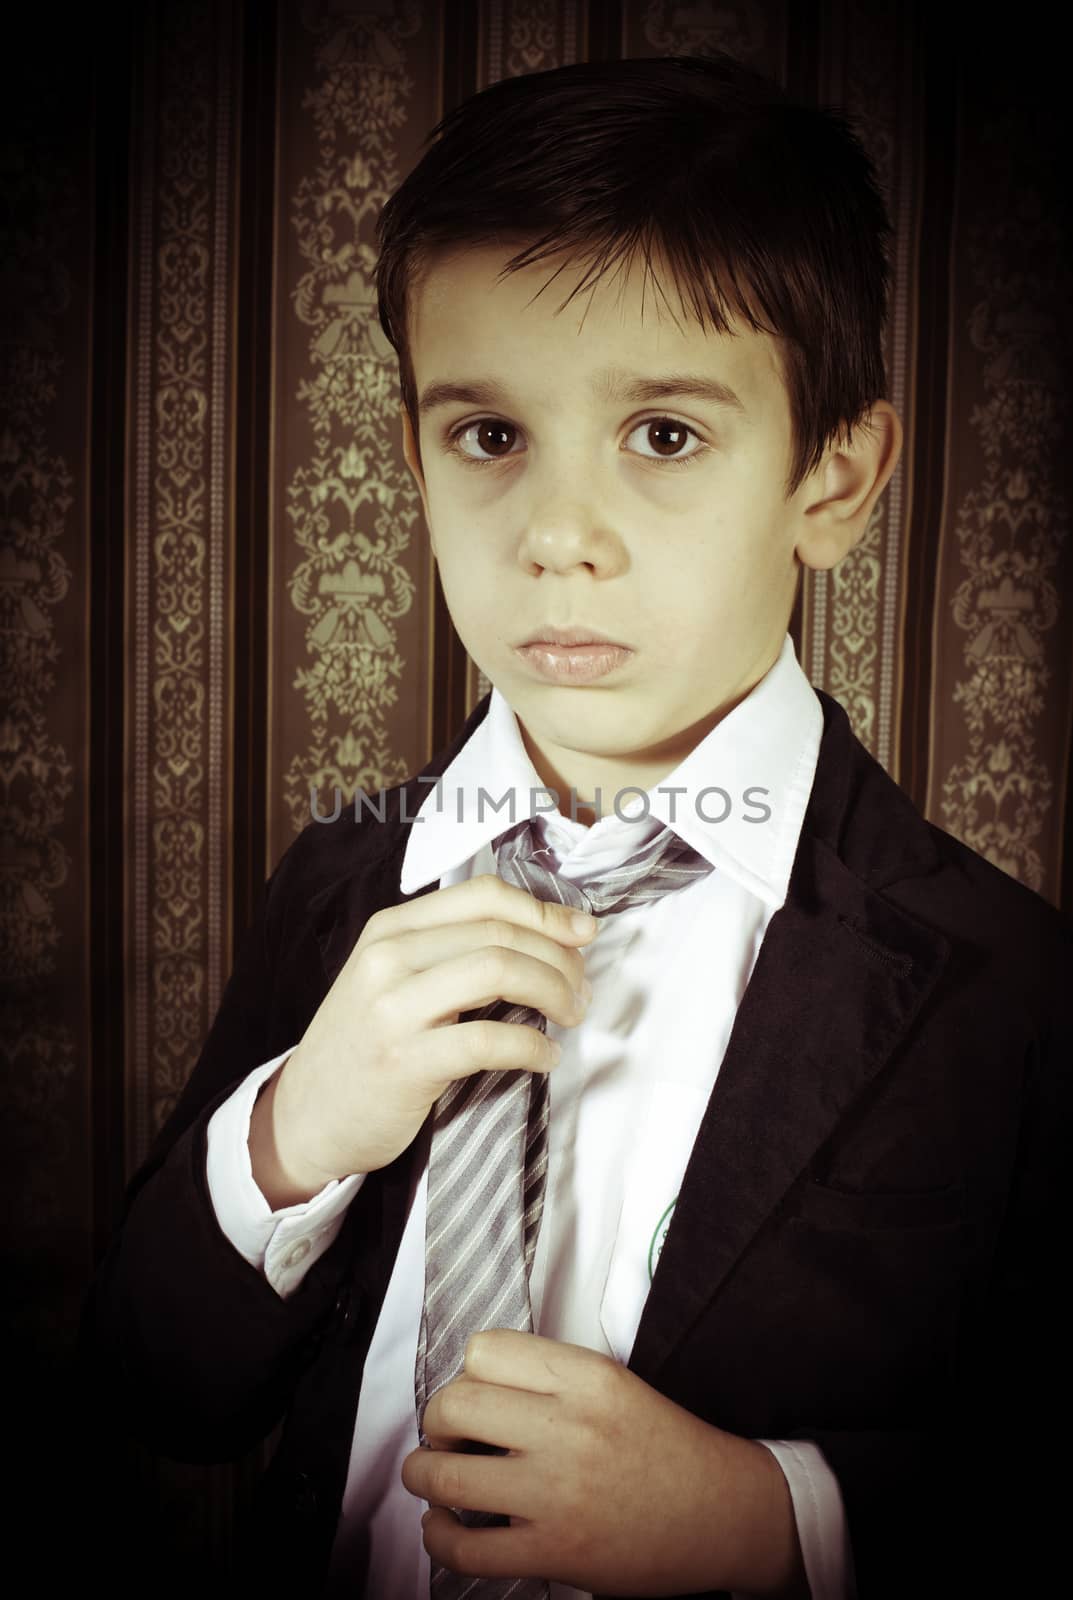 Boy in vintage black suit and tie